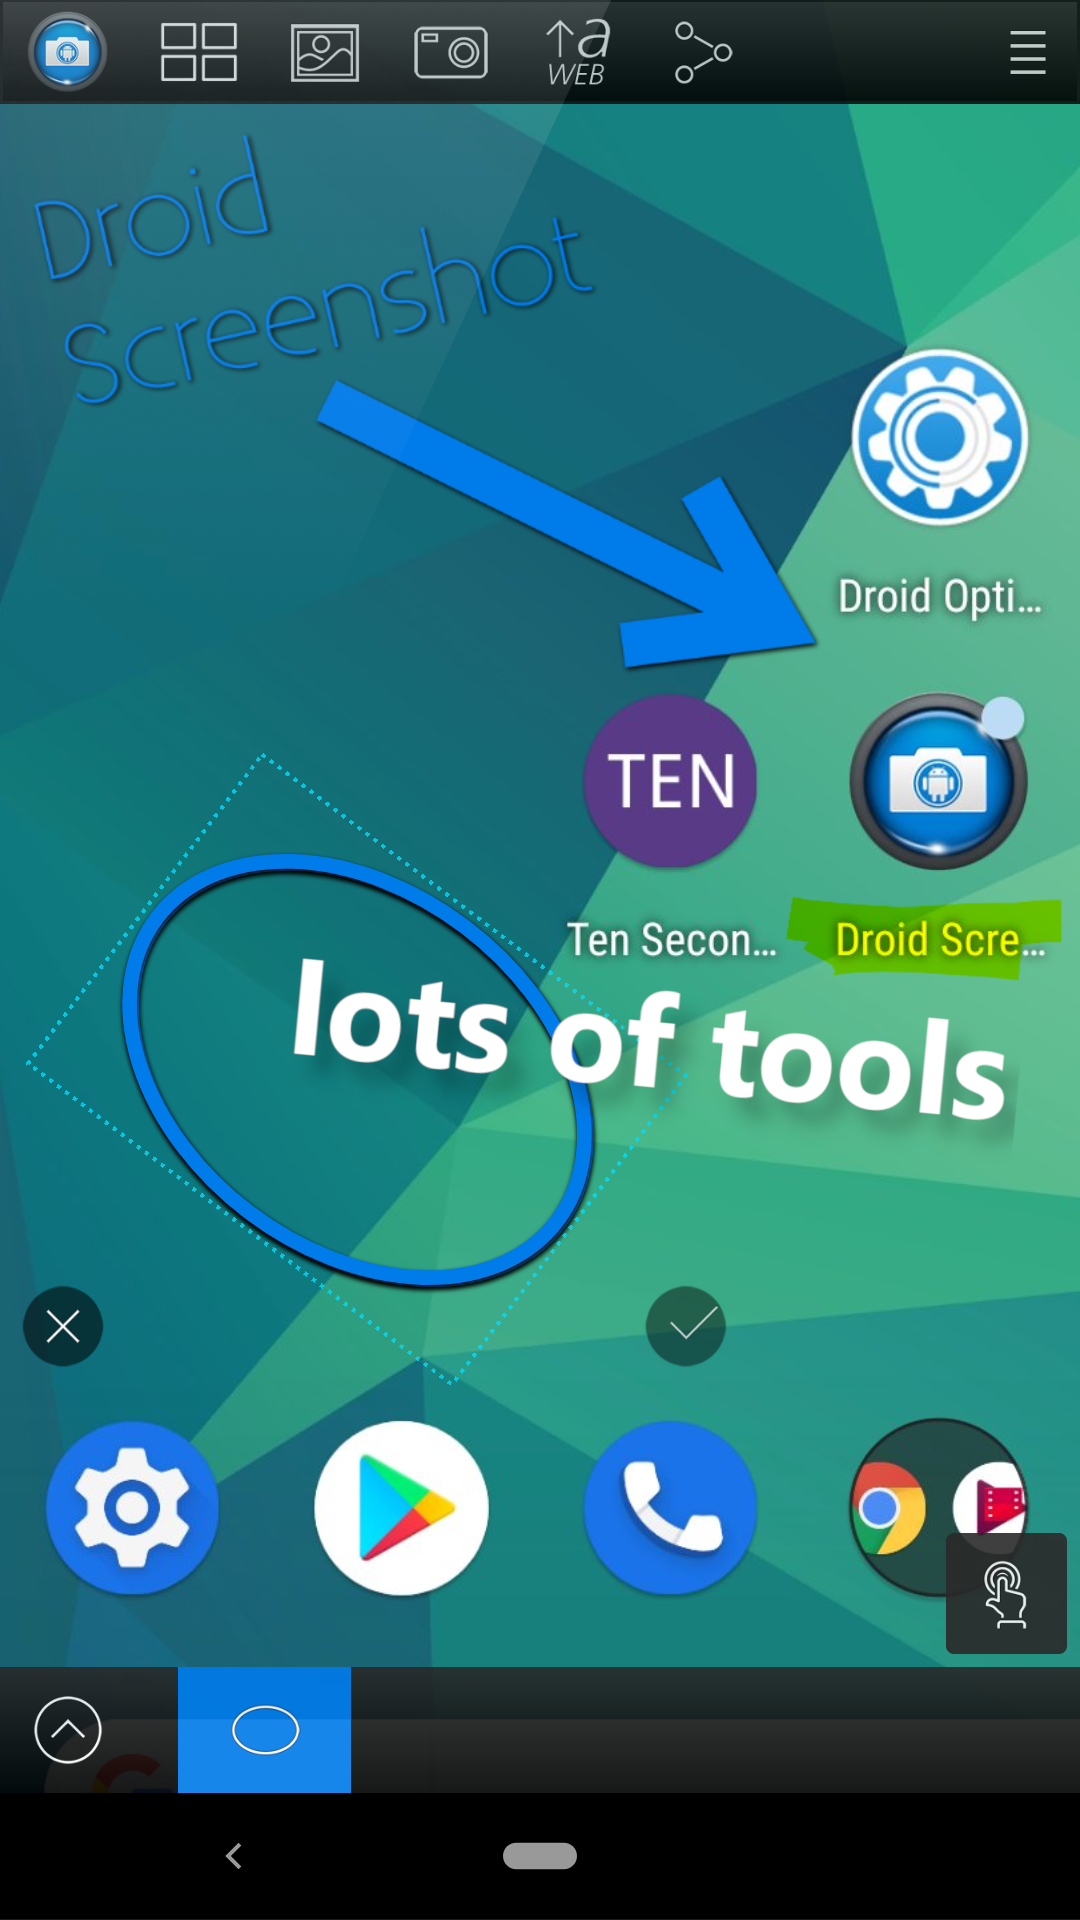 Many tools